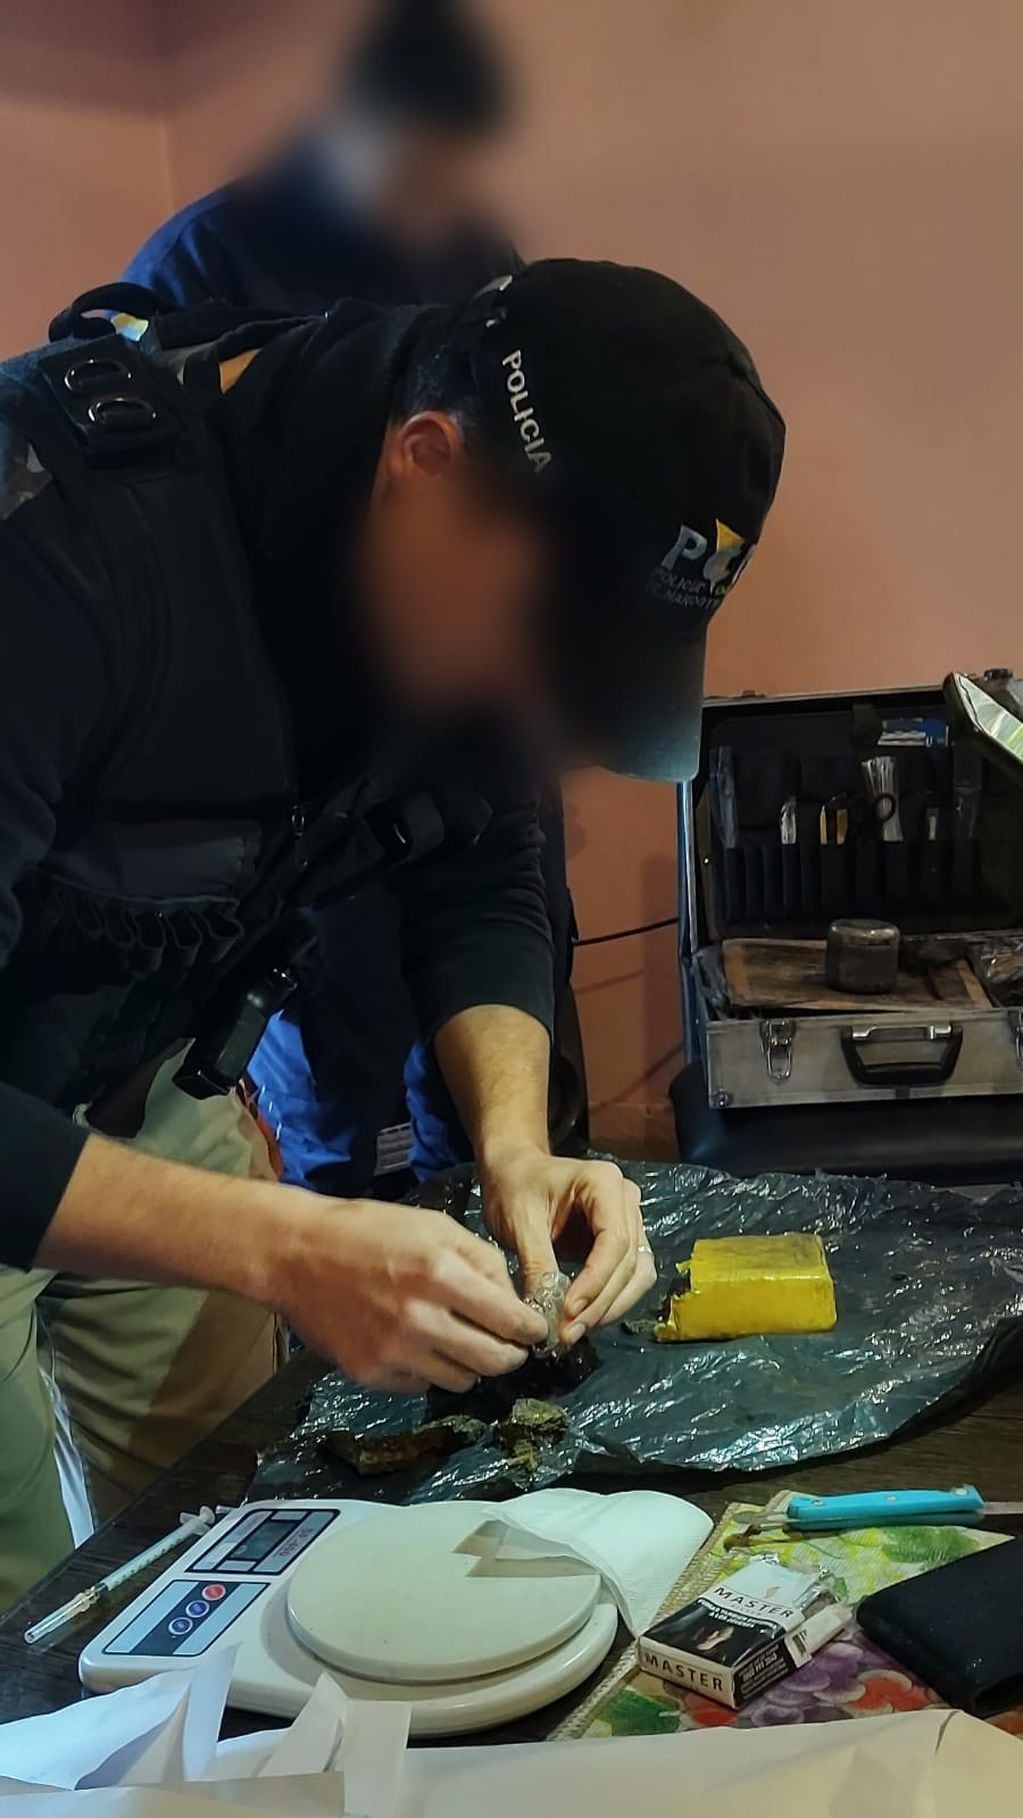 La policía desbarató un kiosco de venta de droga en Alvear y detuvo a un joven de 18 años.